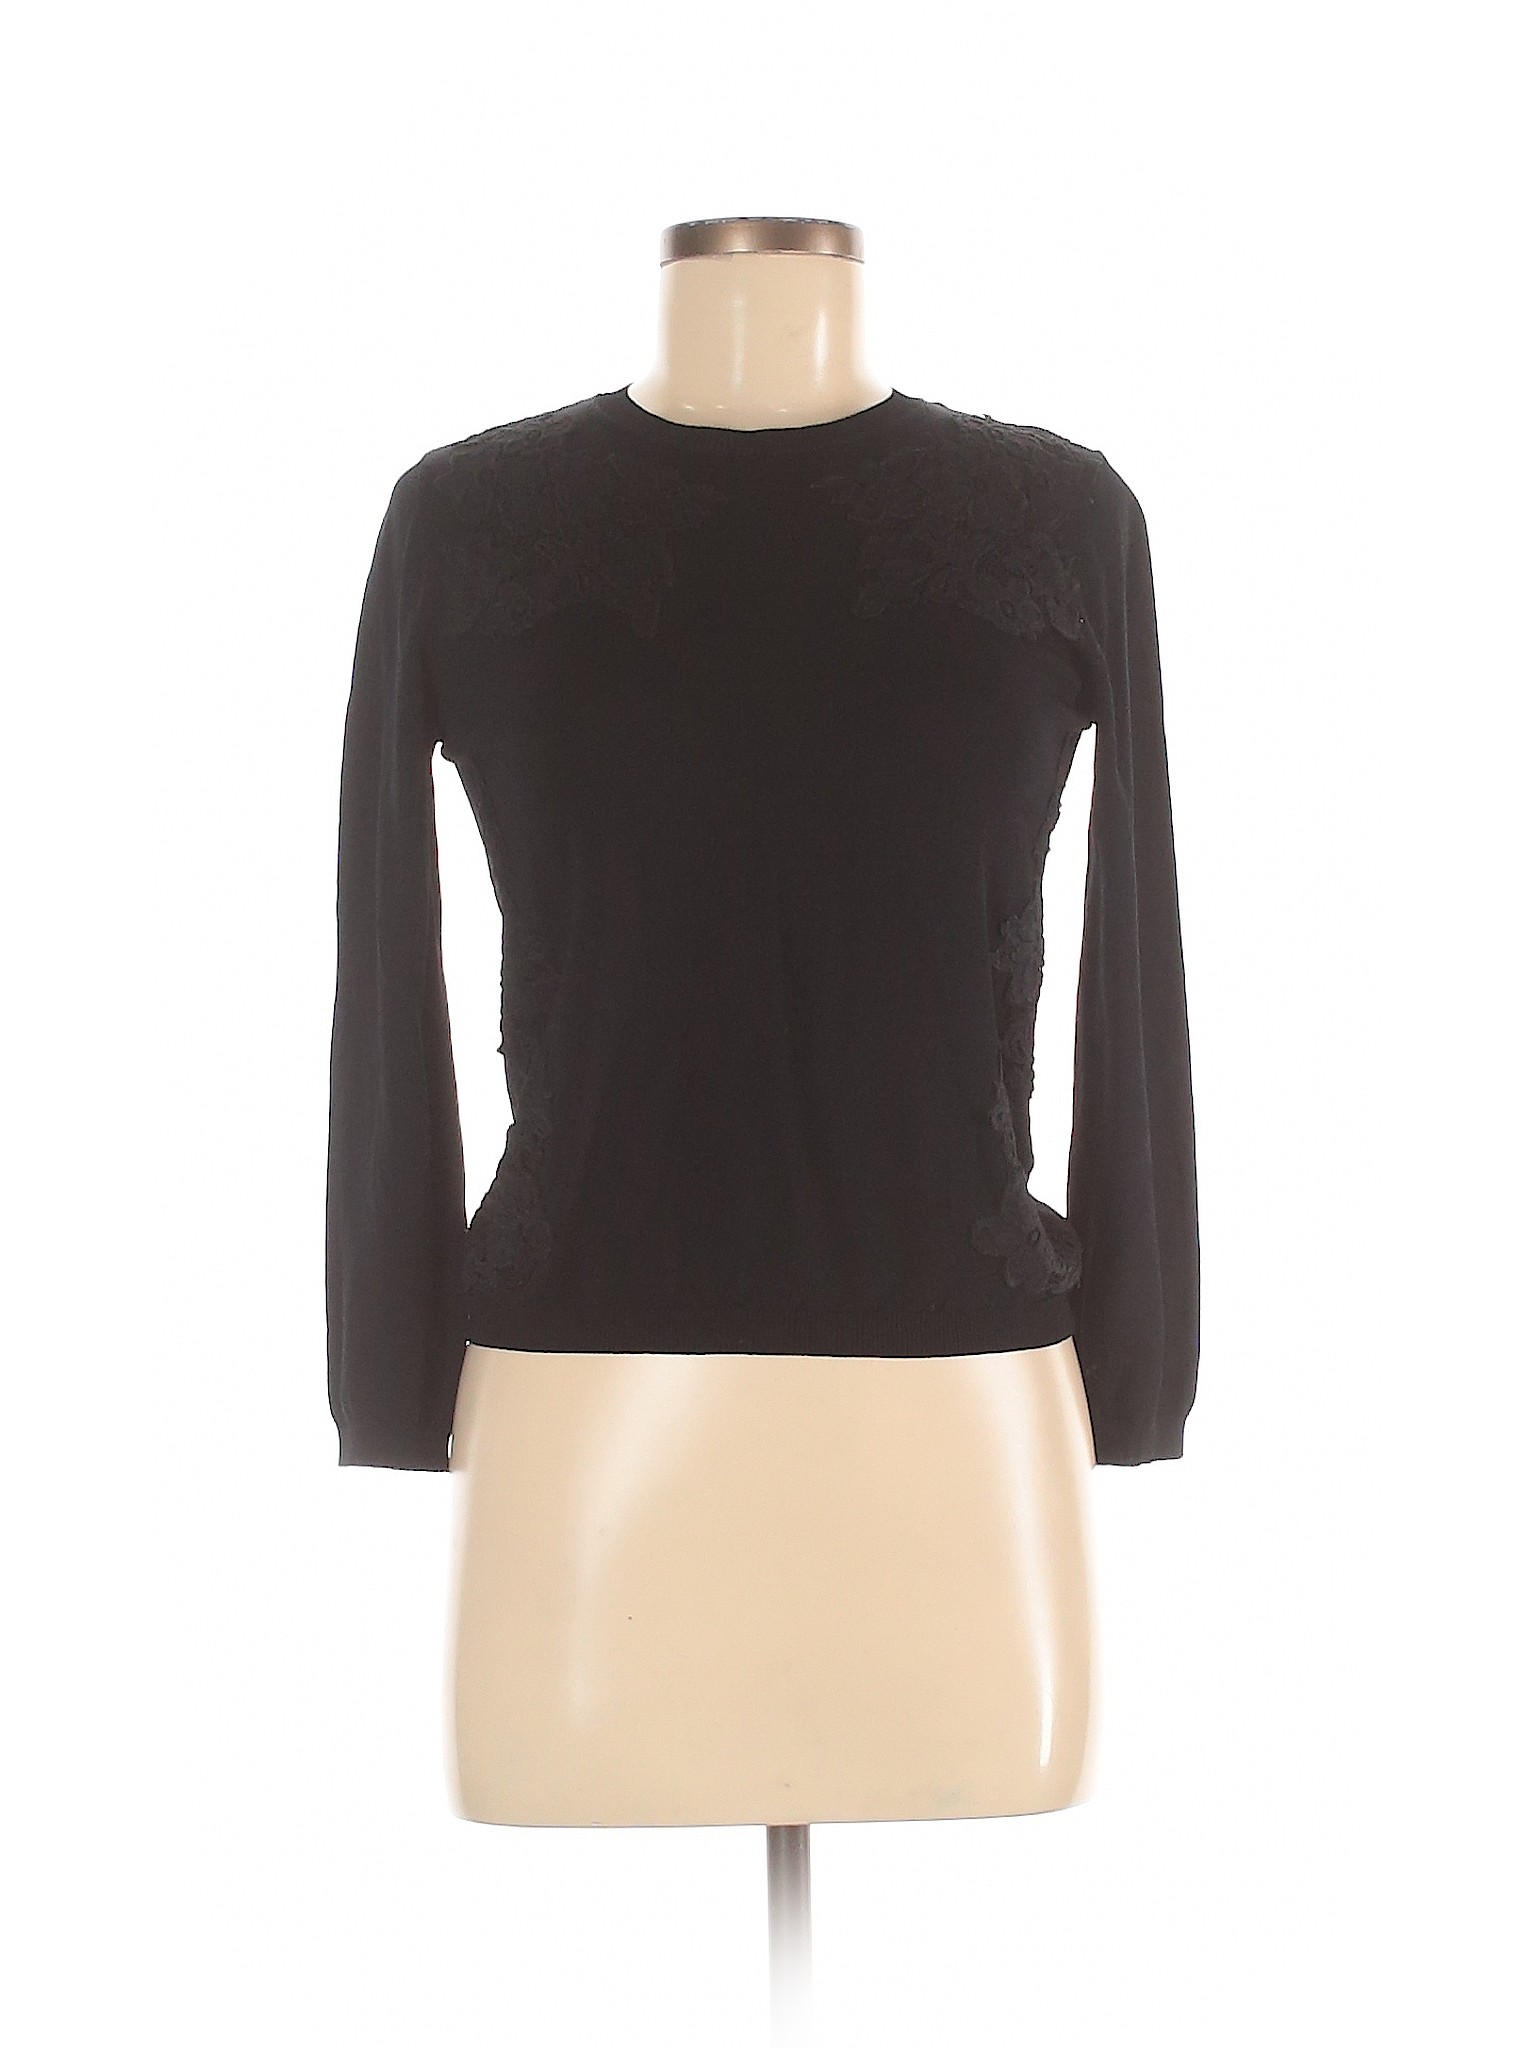 Zara Women Black Long Sleeve Top M | eBay